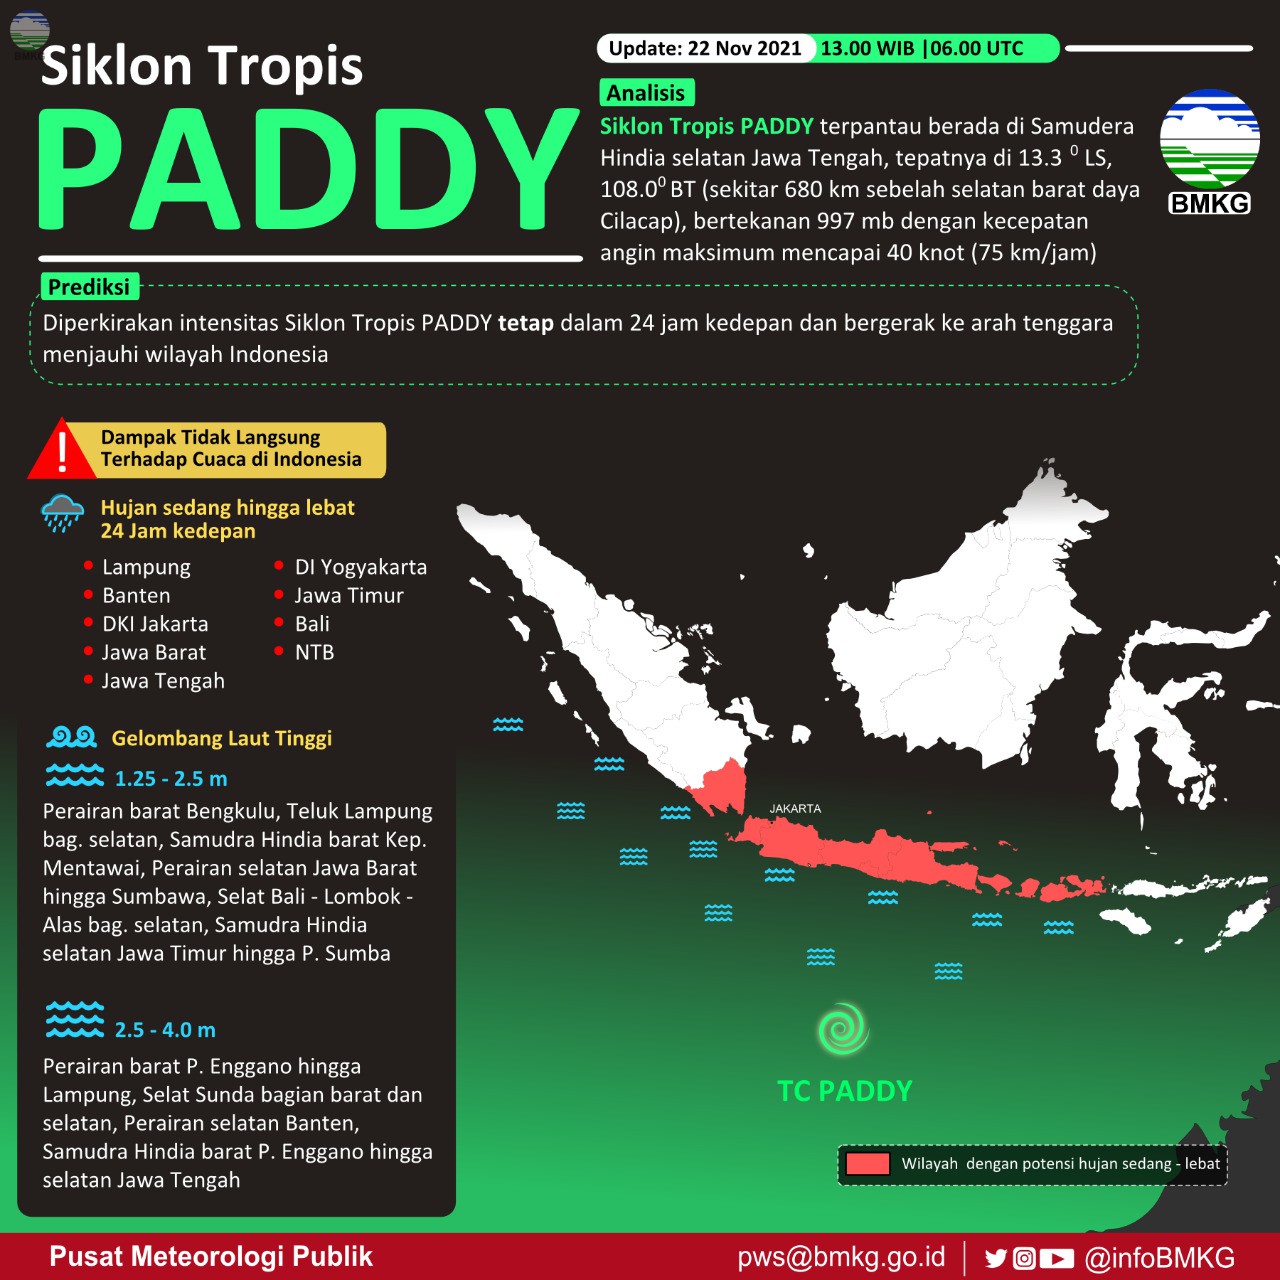 Bibit Siklon 90S Tumbuh Menjadi Siklon Tropis Paddy, Begini Dampaknya di Wilayah Indonesia